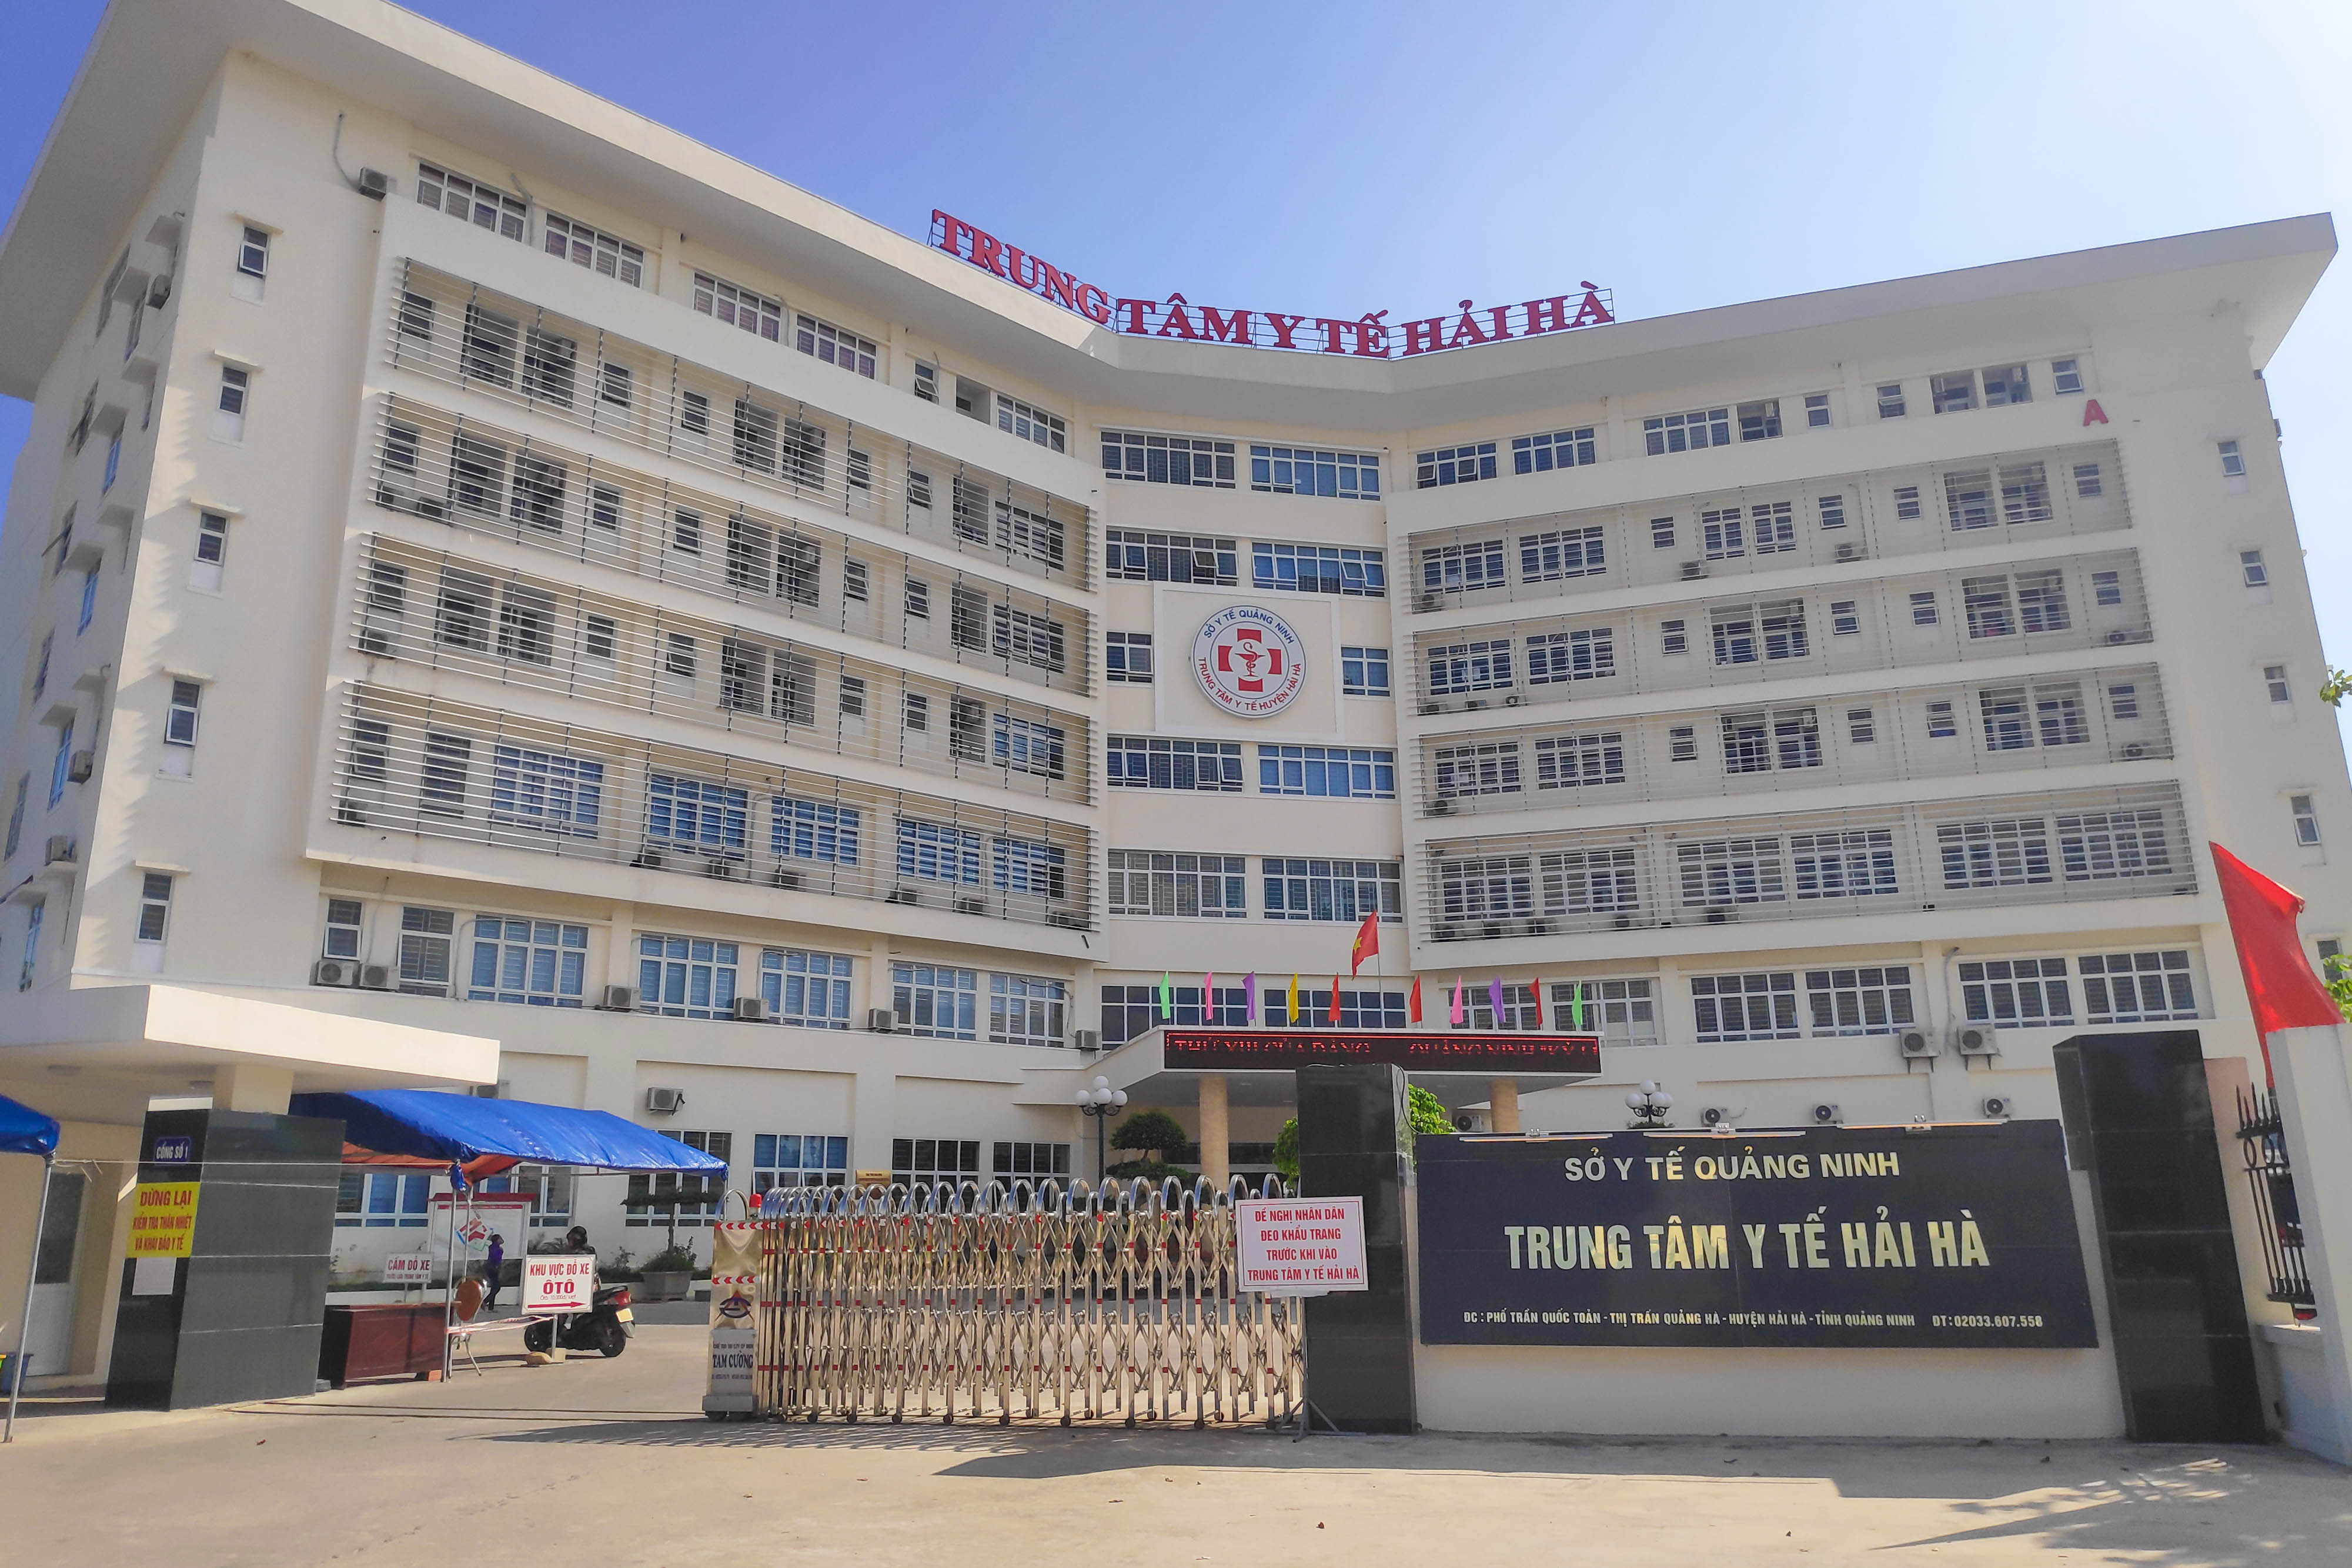 Dự án nâng cấp, mở rộng Trung tâm Y tế huyện Hải Hà đi vào hoạt động từ tháng 11/2019, là một trong những tiêu chí xây dựng huyện NTM.